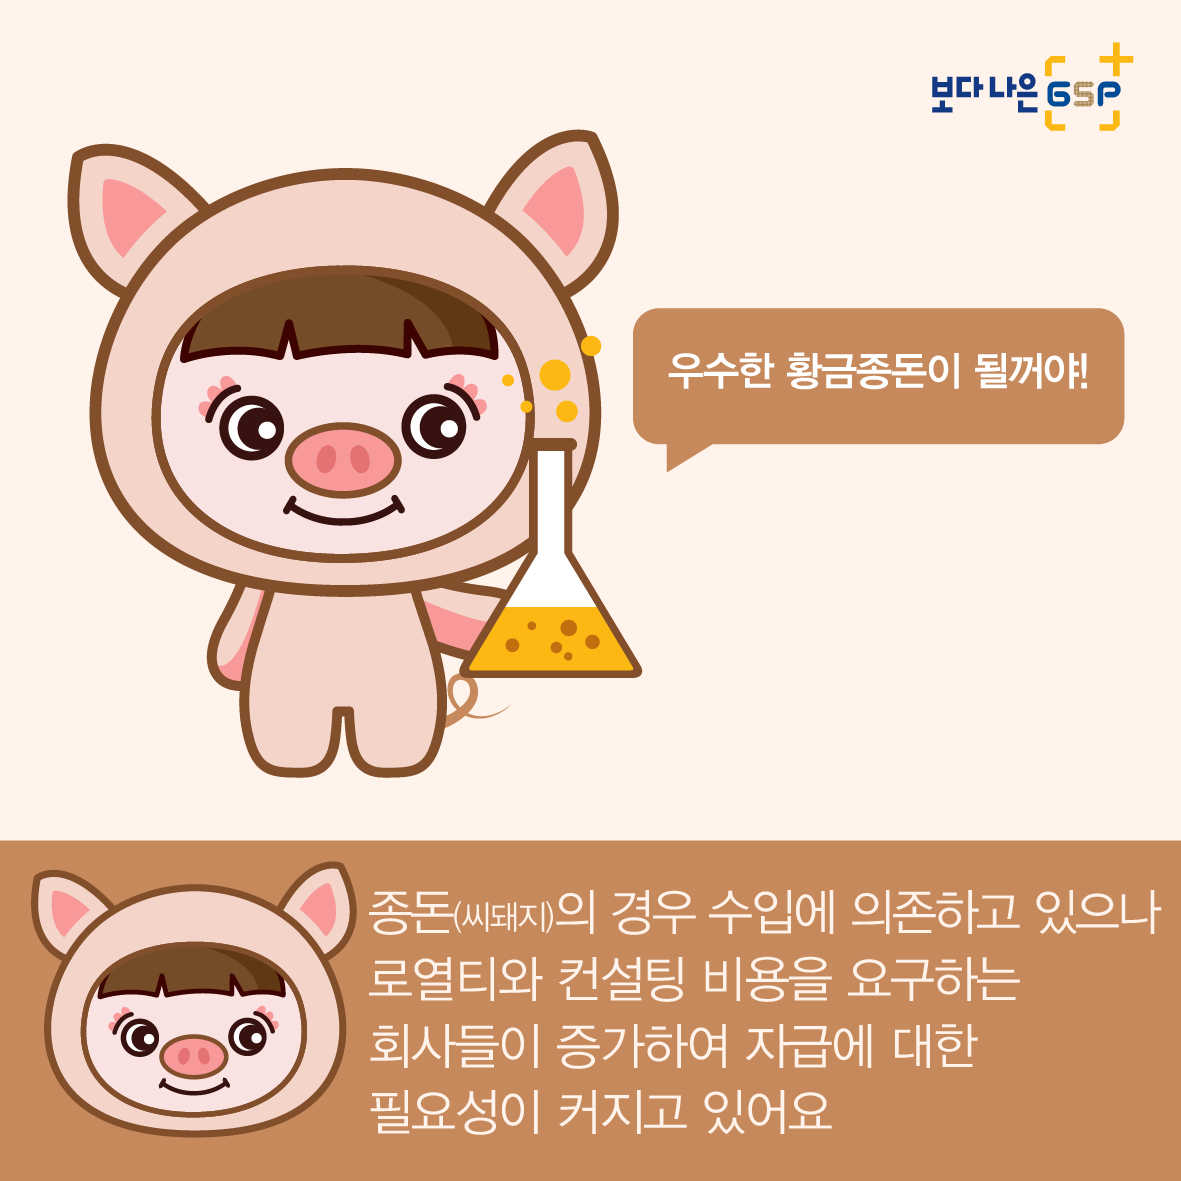 친절한 종자씨와 함께하는 GSP 품종뉴스 - 종돈편 카드뉴스_종돈편-03.jpg